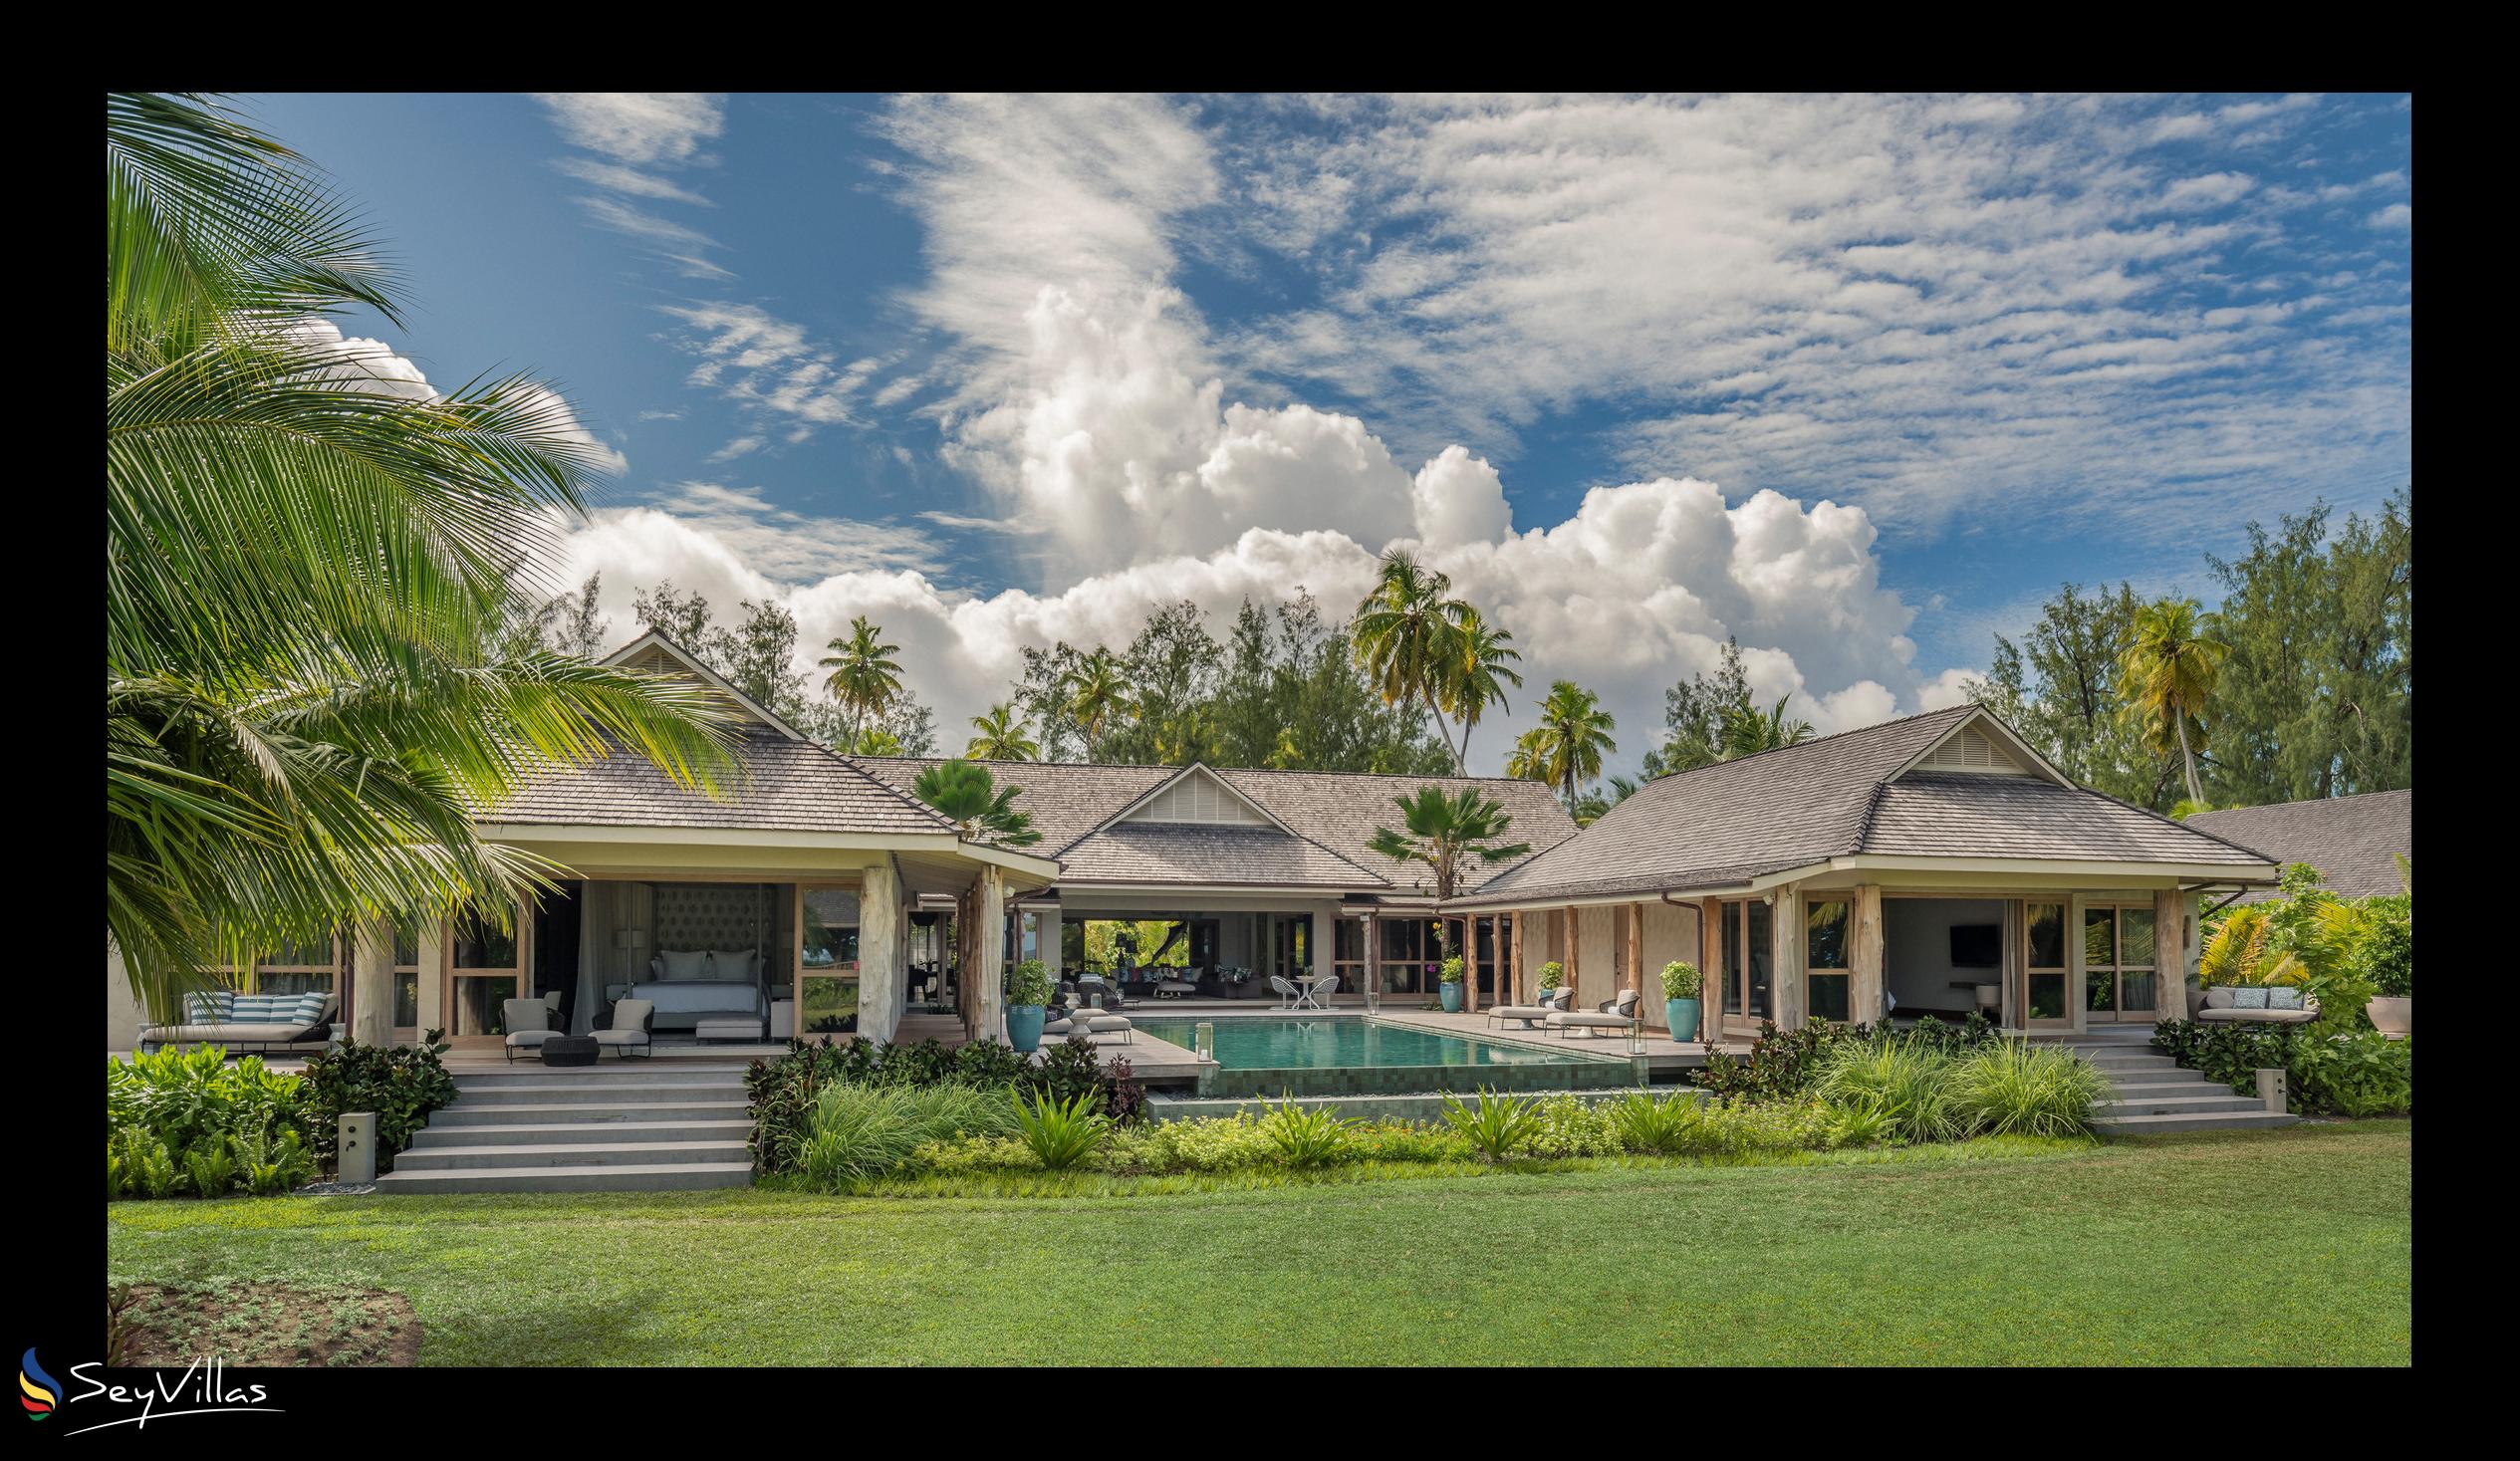 Foto 185: Four Seasons Resort Desroches Island - 3-Schlafzimmer Präsidenten-Villa - Desroches Island (Seychellen)